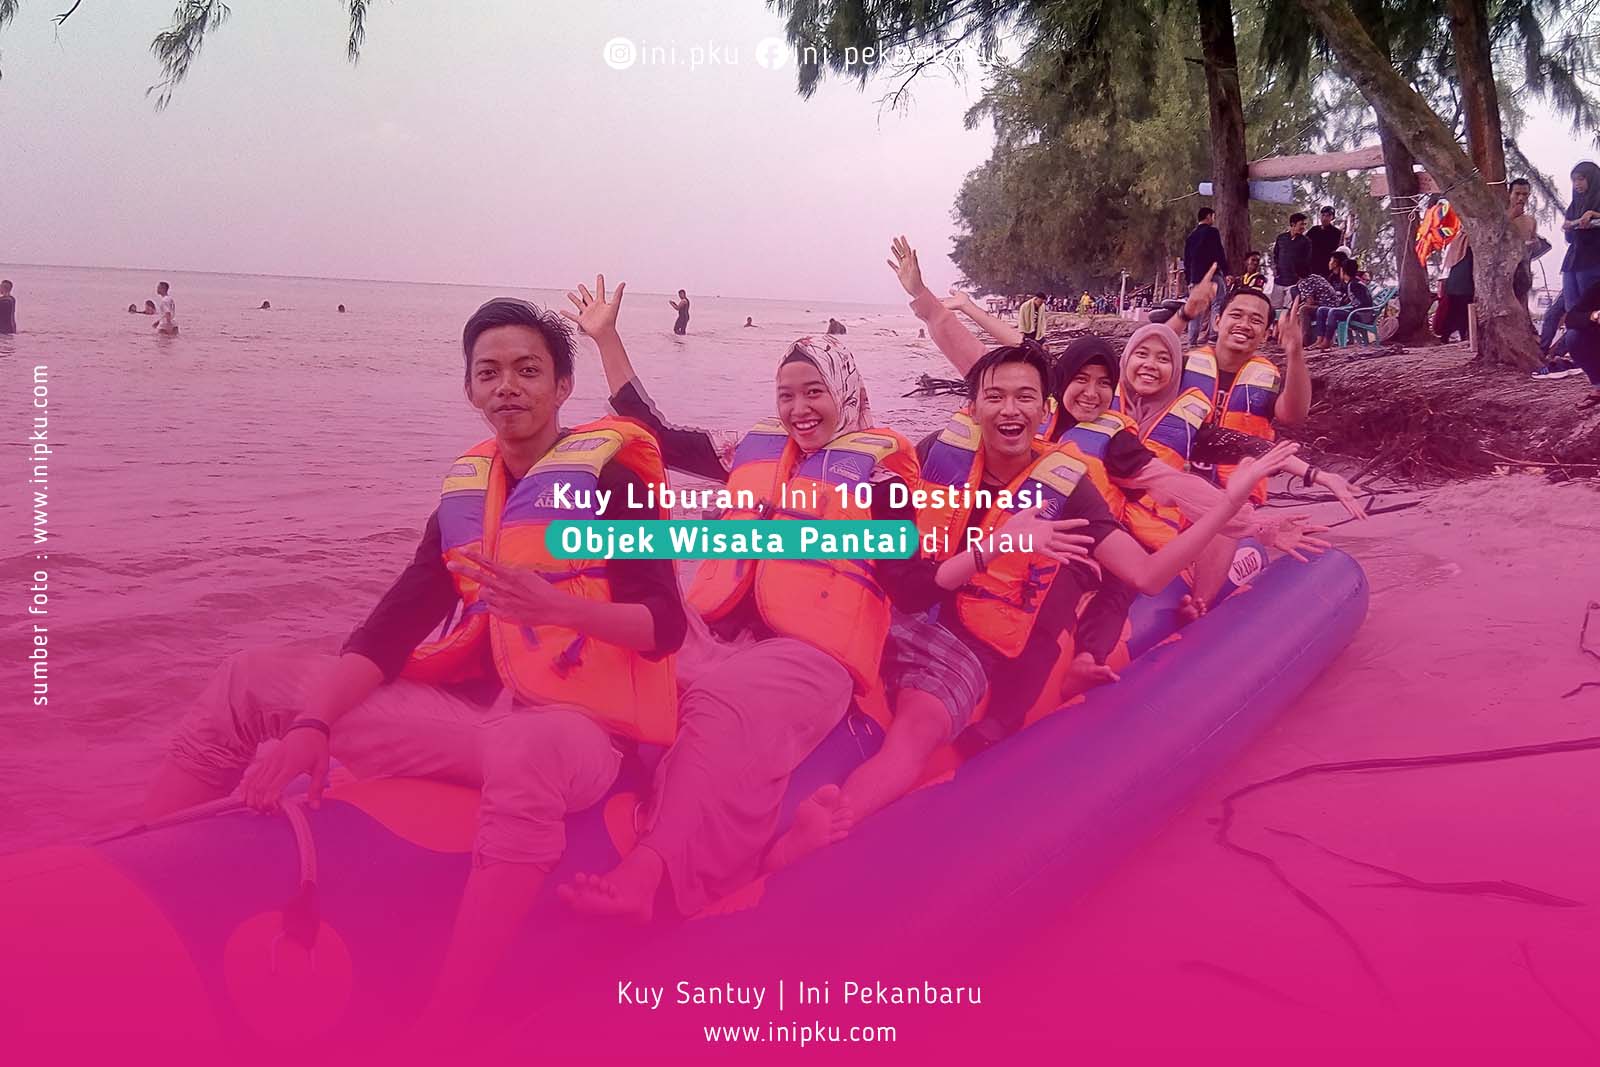 Kuy Liburan, Ini 10 Destinasi Objek Wisata Pantai di Riau